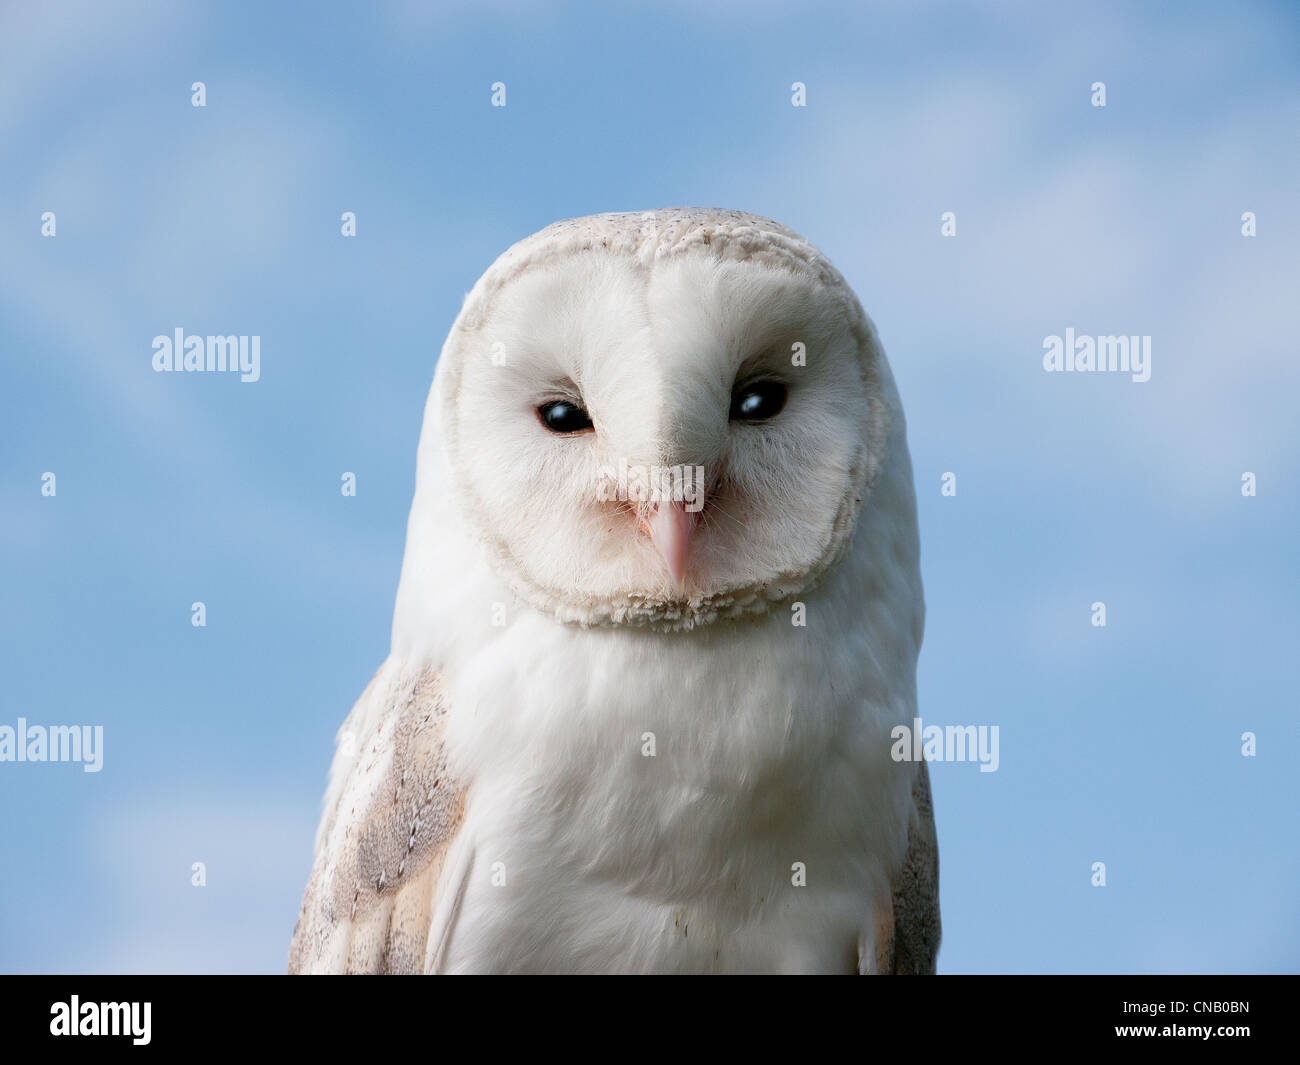 Close up of White Barn Owl at Chenies, Amersham, Bucks, UK Stock Photo